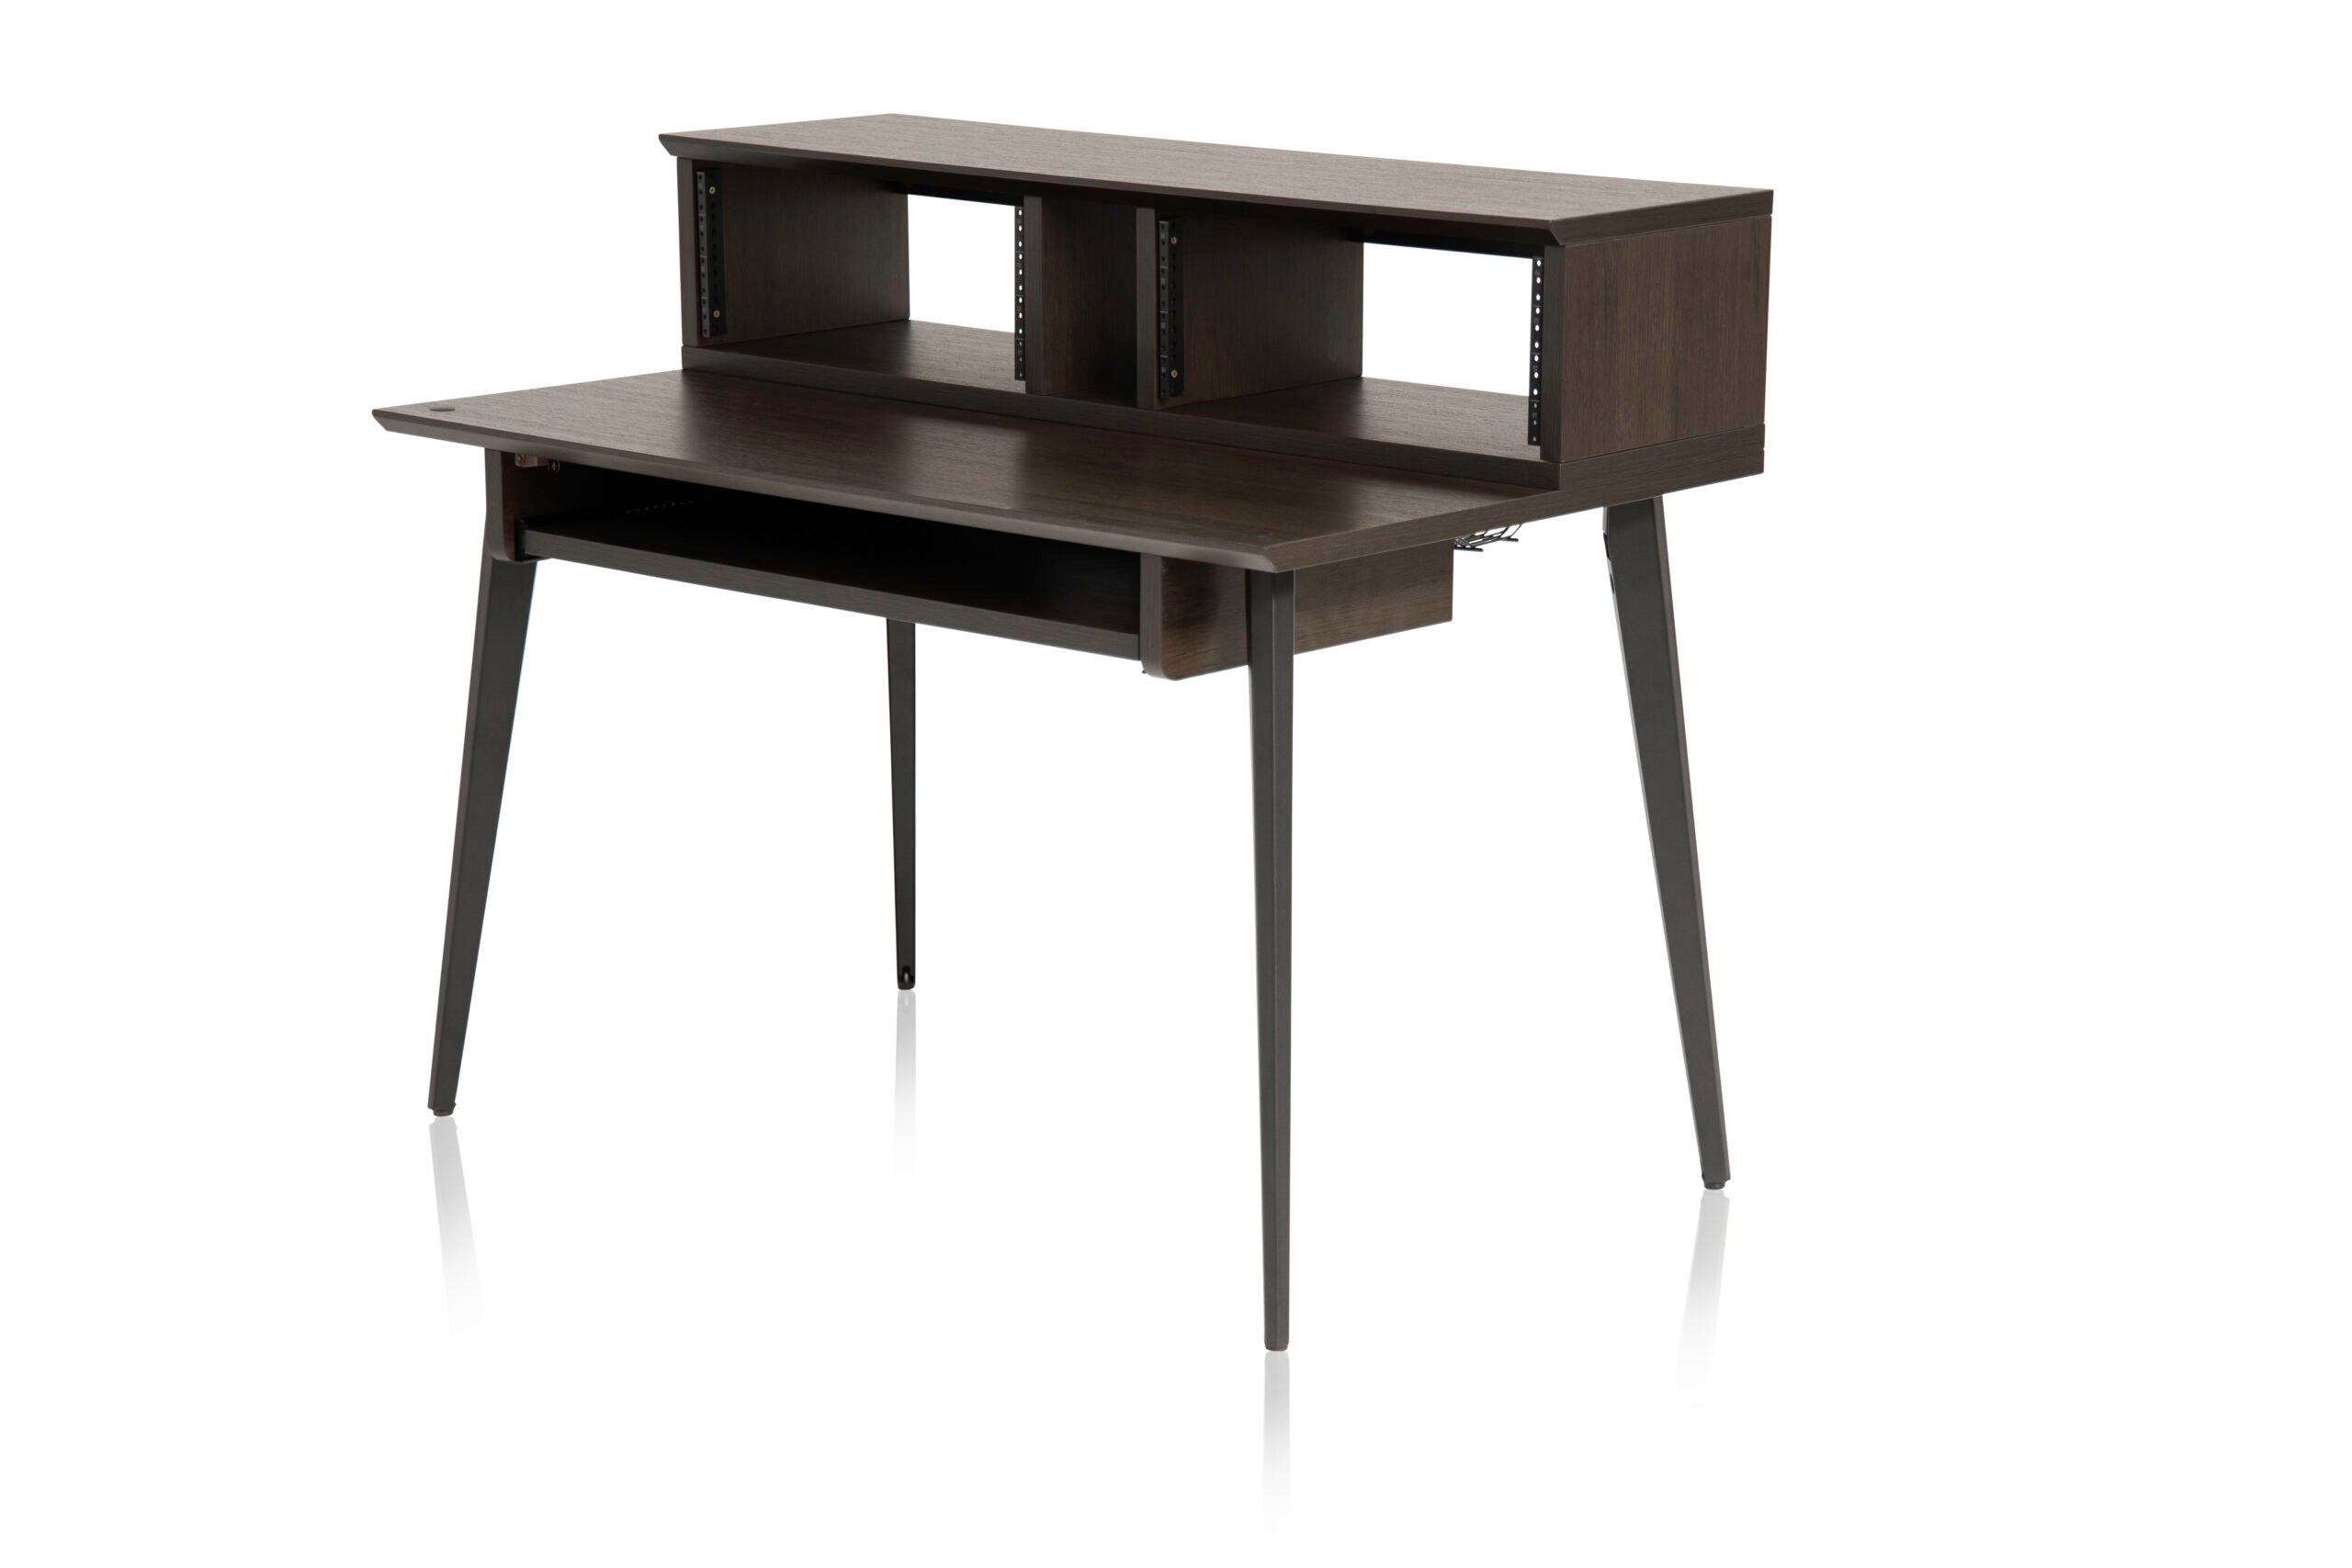 Gator Frameworks | Elite Series Furniture Desk - BRN